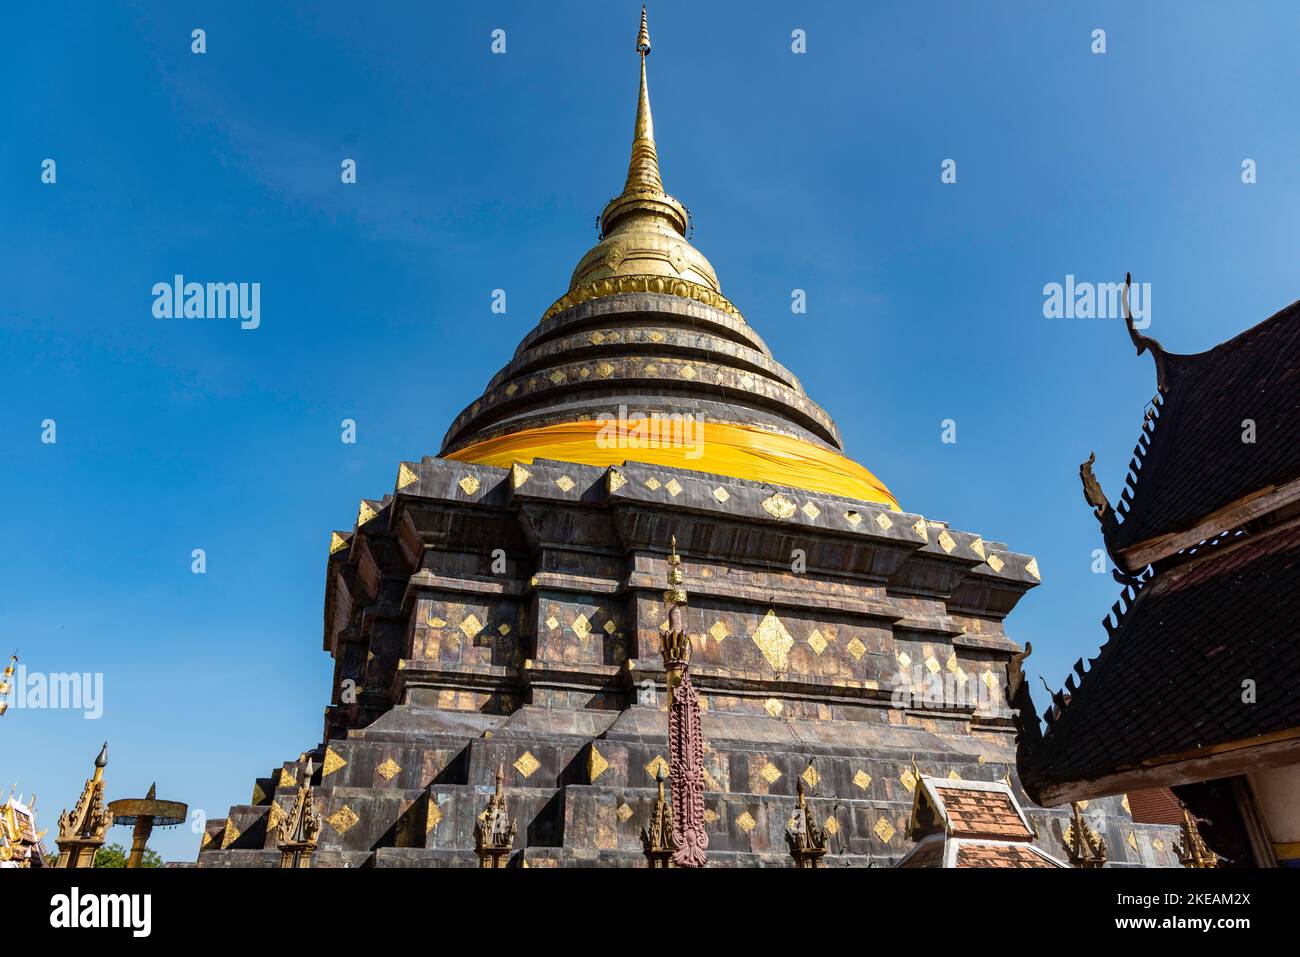 Templo del Buda Esmeralda (Wat Phra Kaew): el templo budista más famoso y venerado de todo Taicandia tiene esta distinción p Foto Stock